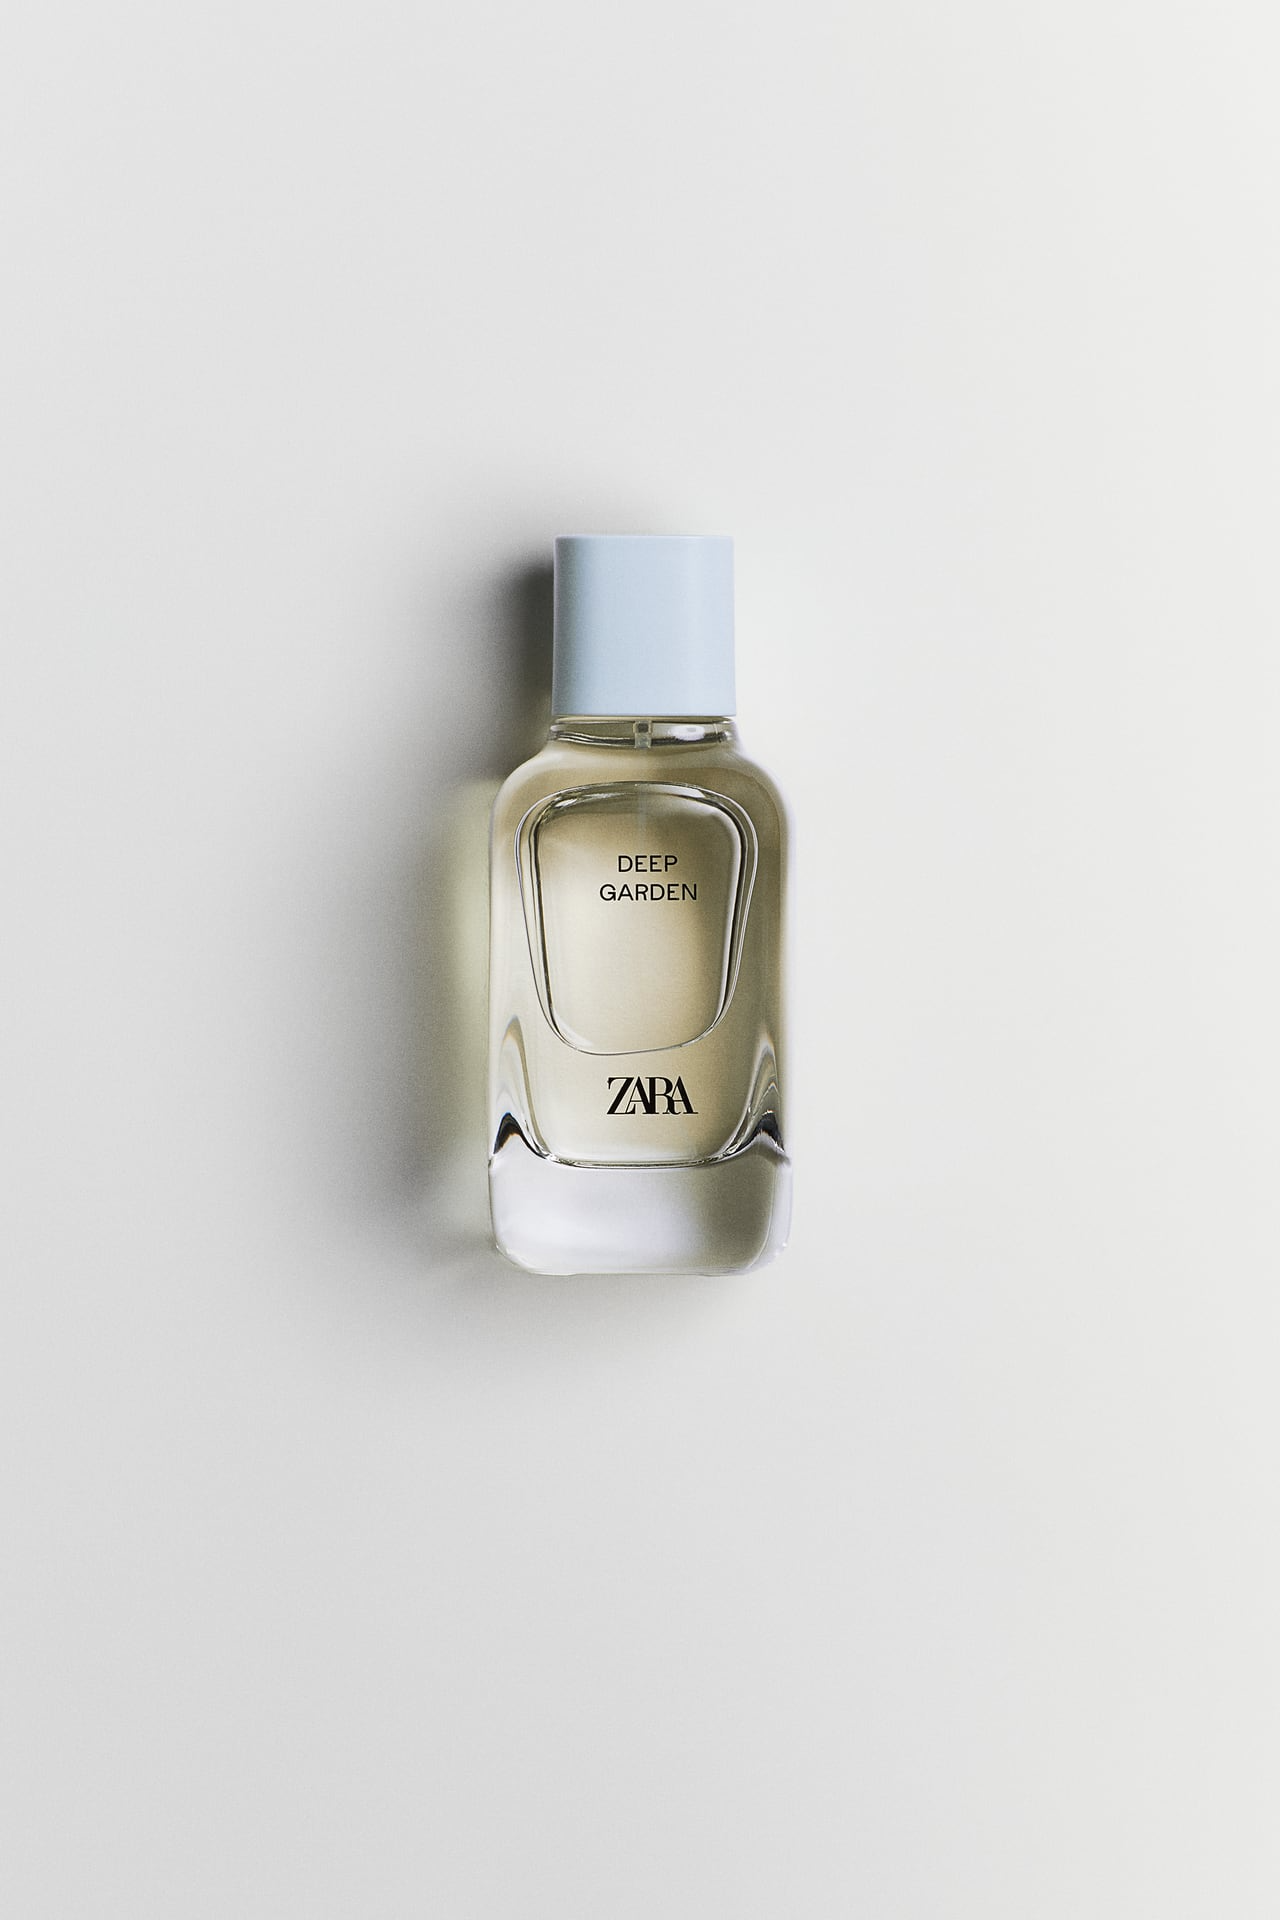 14.Zara Deep Garden Perfume €15.95, 